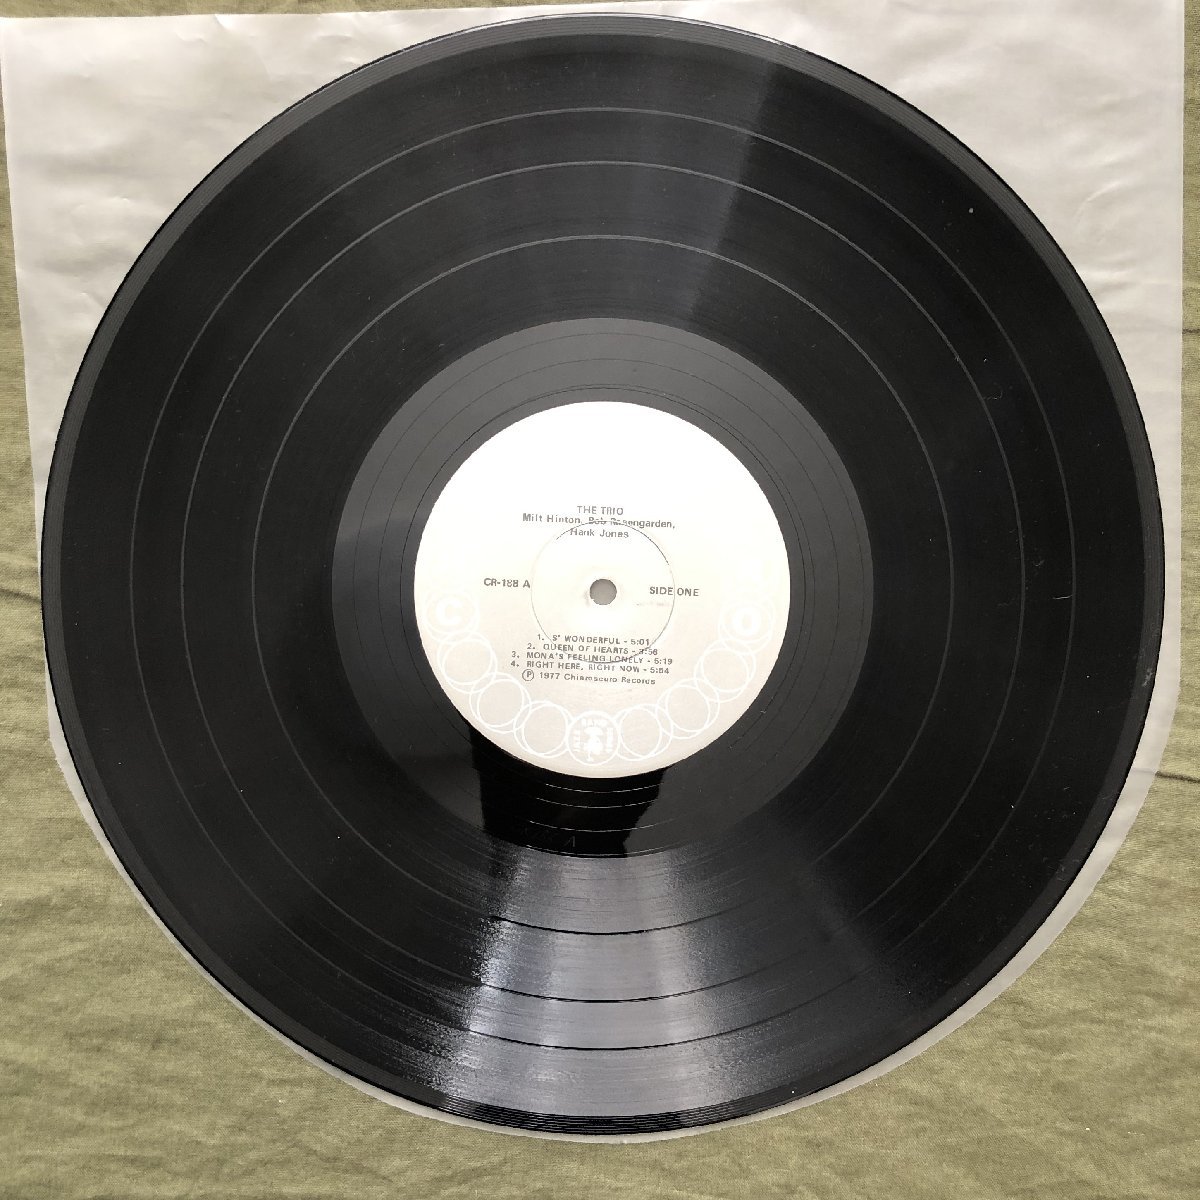 原信夫Collection 美盤 1977年 米国 本国オリジナルリリース盤 Milt Hinton / Bob Rosengarden / Hank Jones LPレコード The Trio_画像9